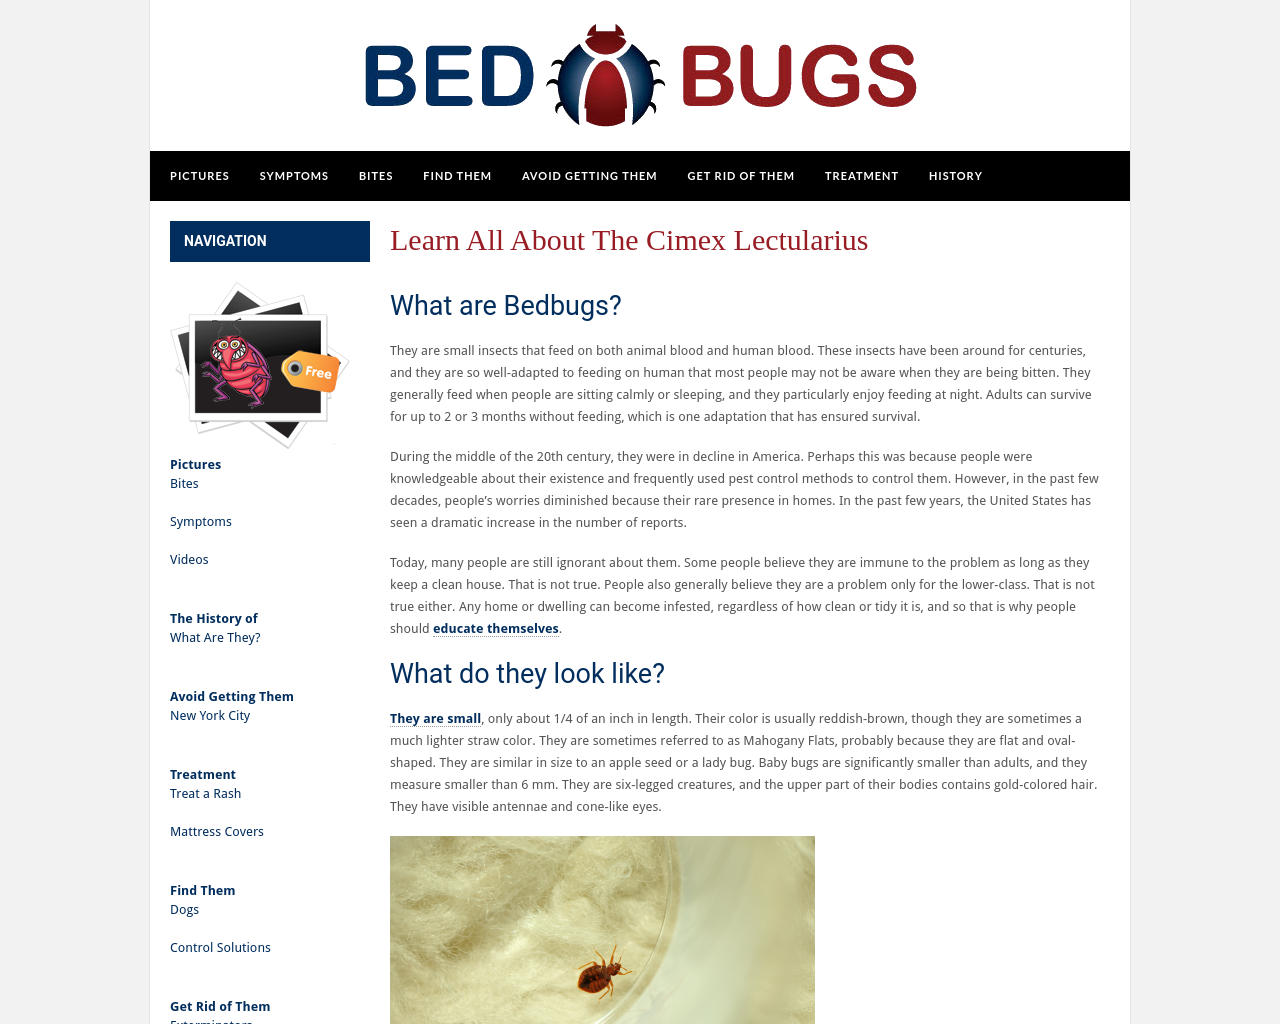 bedbugs.org